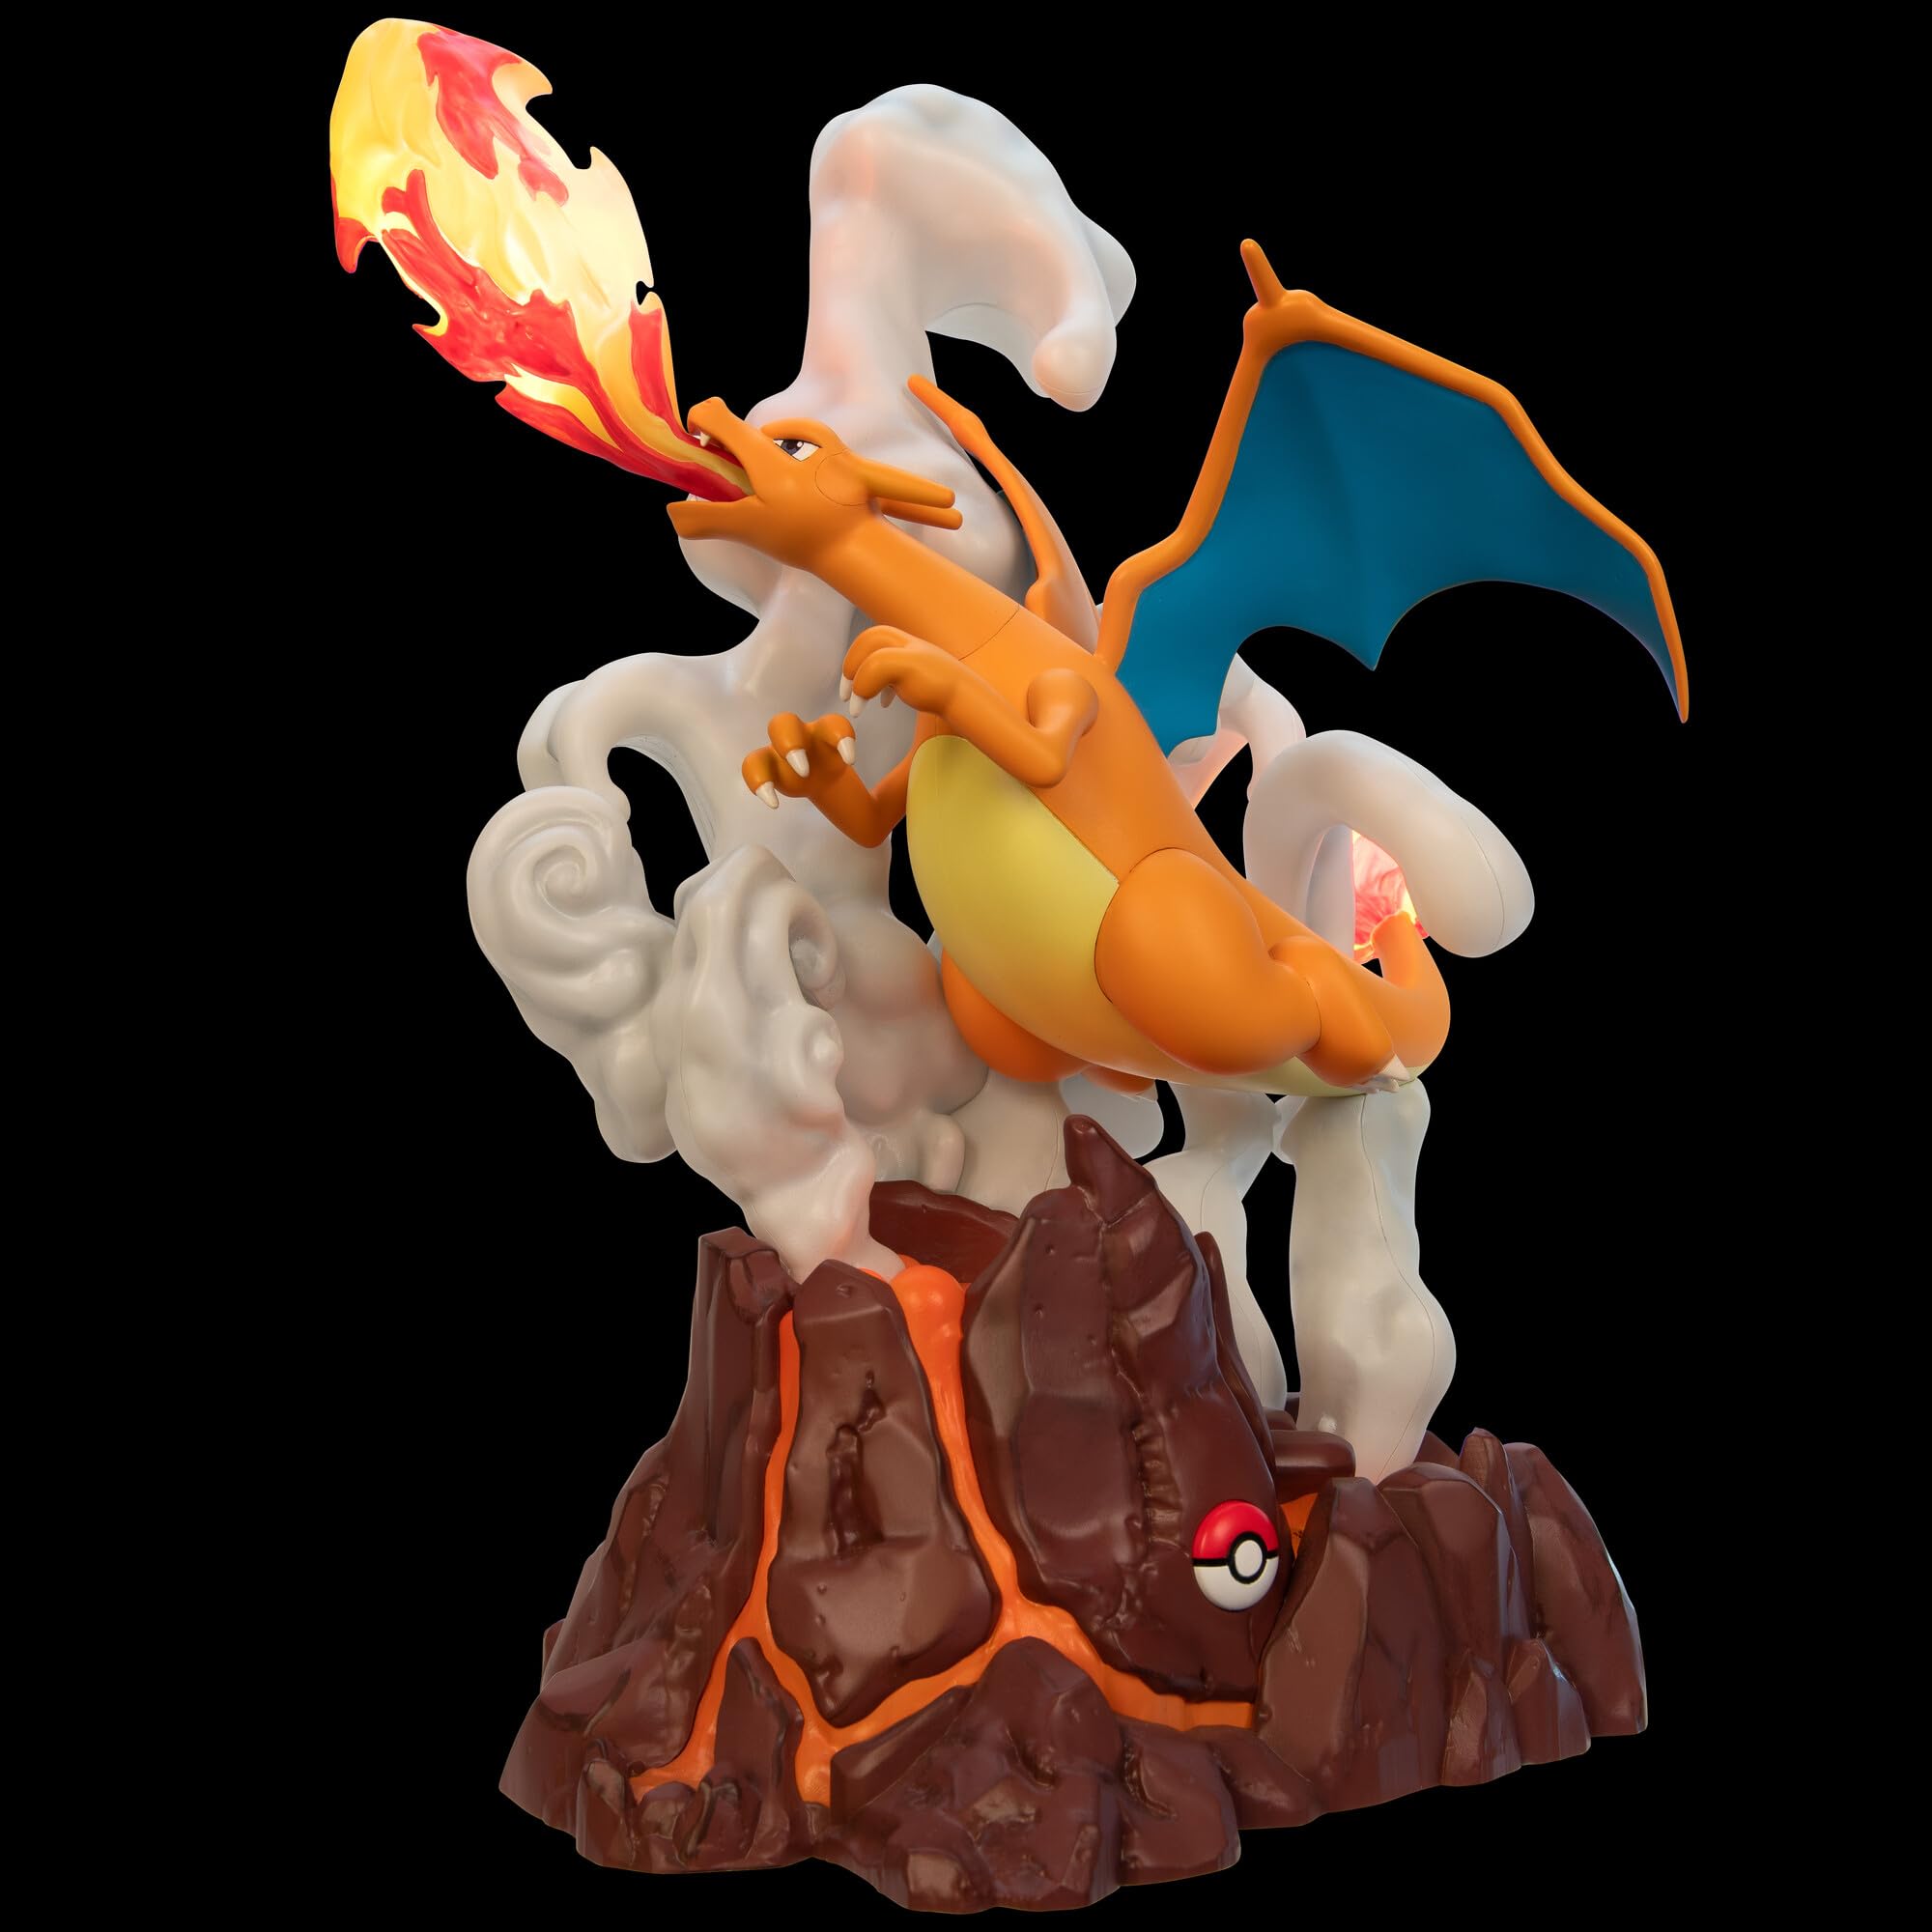 Pokemon Charizard Deluxe Collector’s Statue - 13-Inch Deluxe Collector’s Statue with Light Up Function